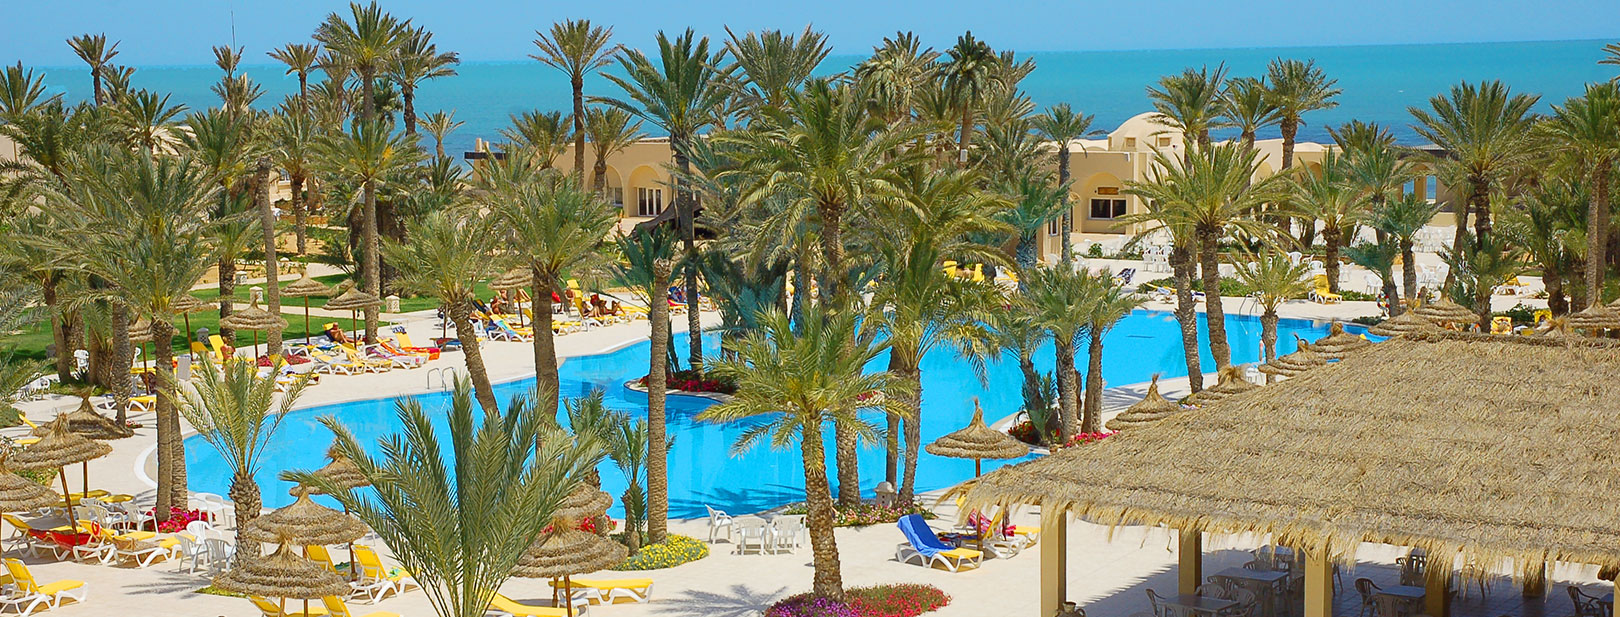 Tunisie - Zarzis - Mondi Club Zita Beach Resort 4* Zarzis